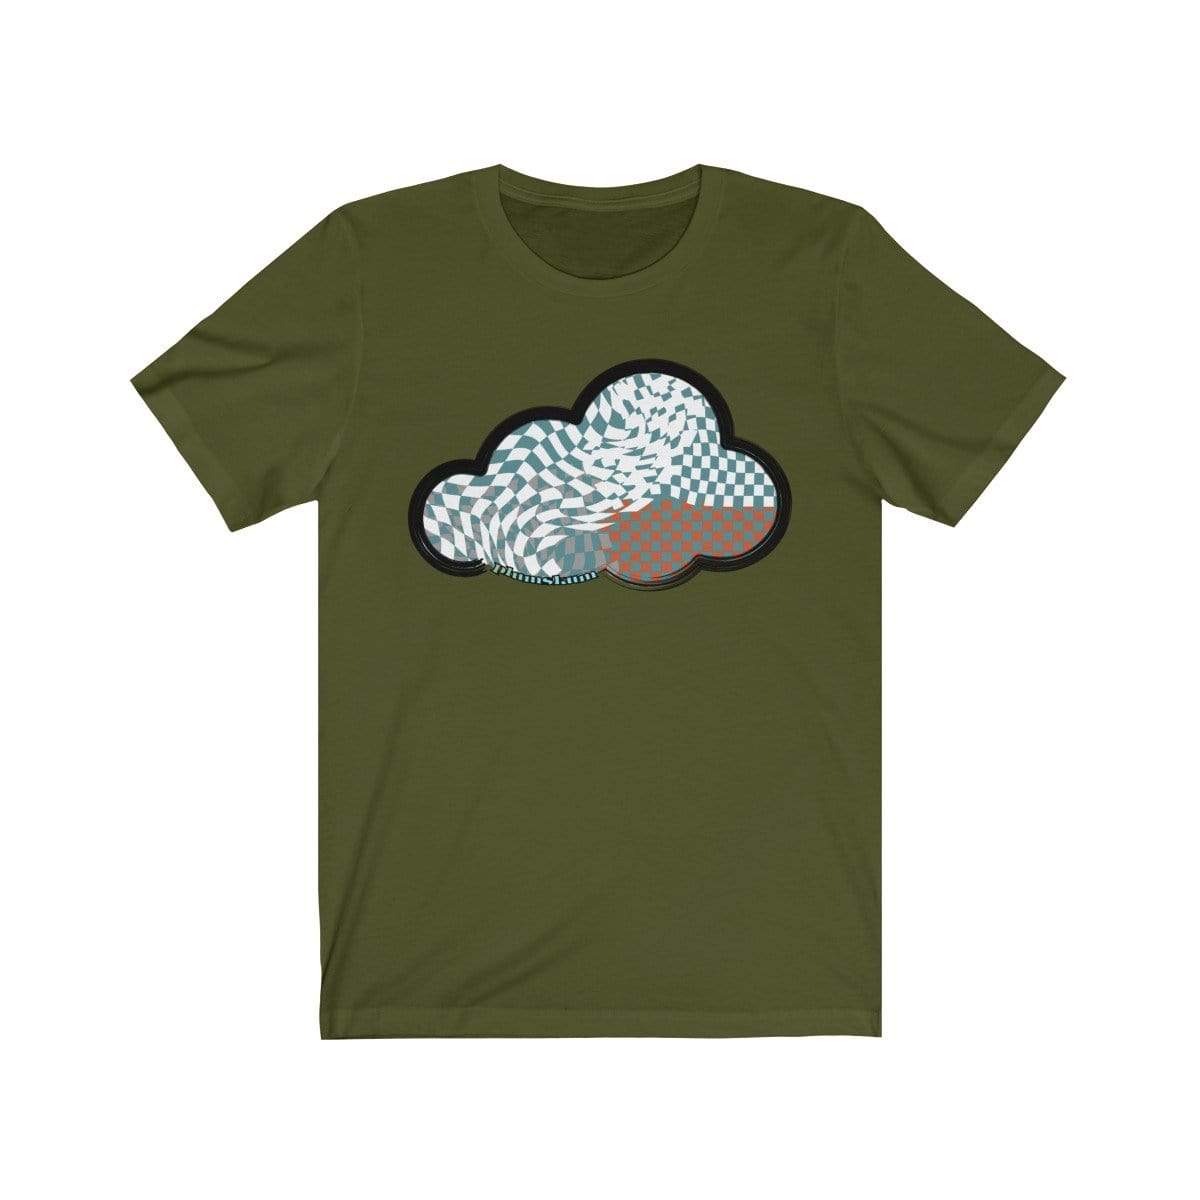 Printify T-Shirt Olive / M Checker Art Clouds T-Shirt